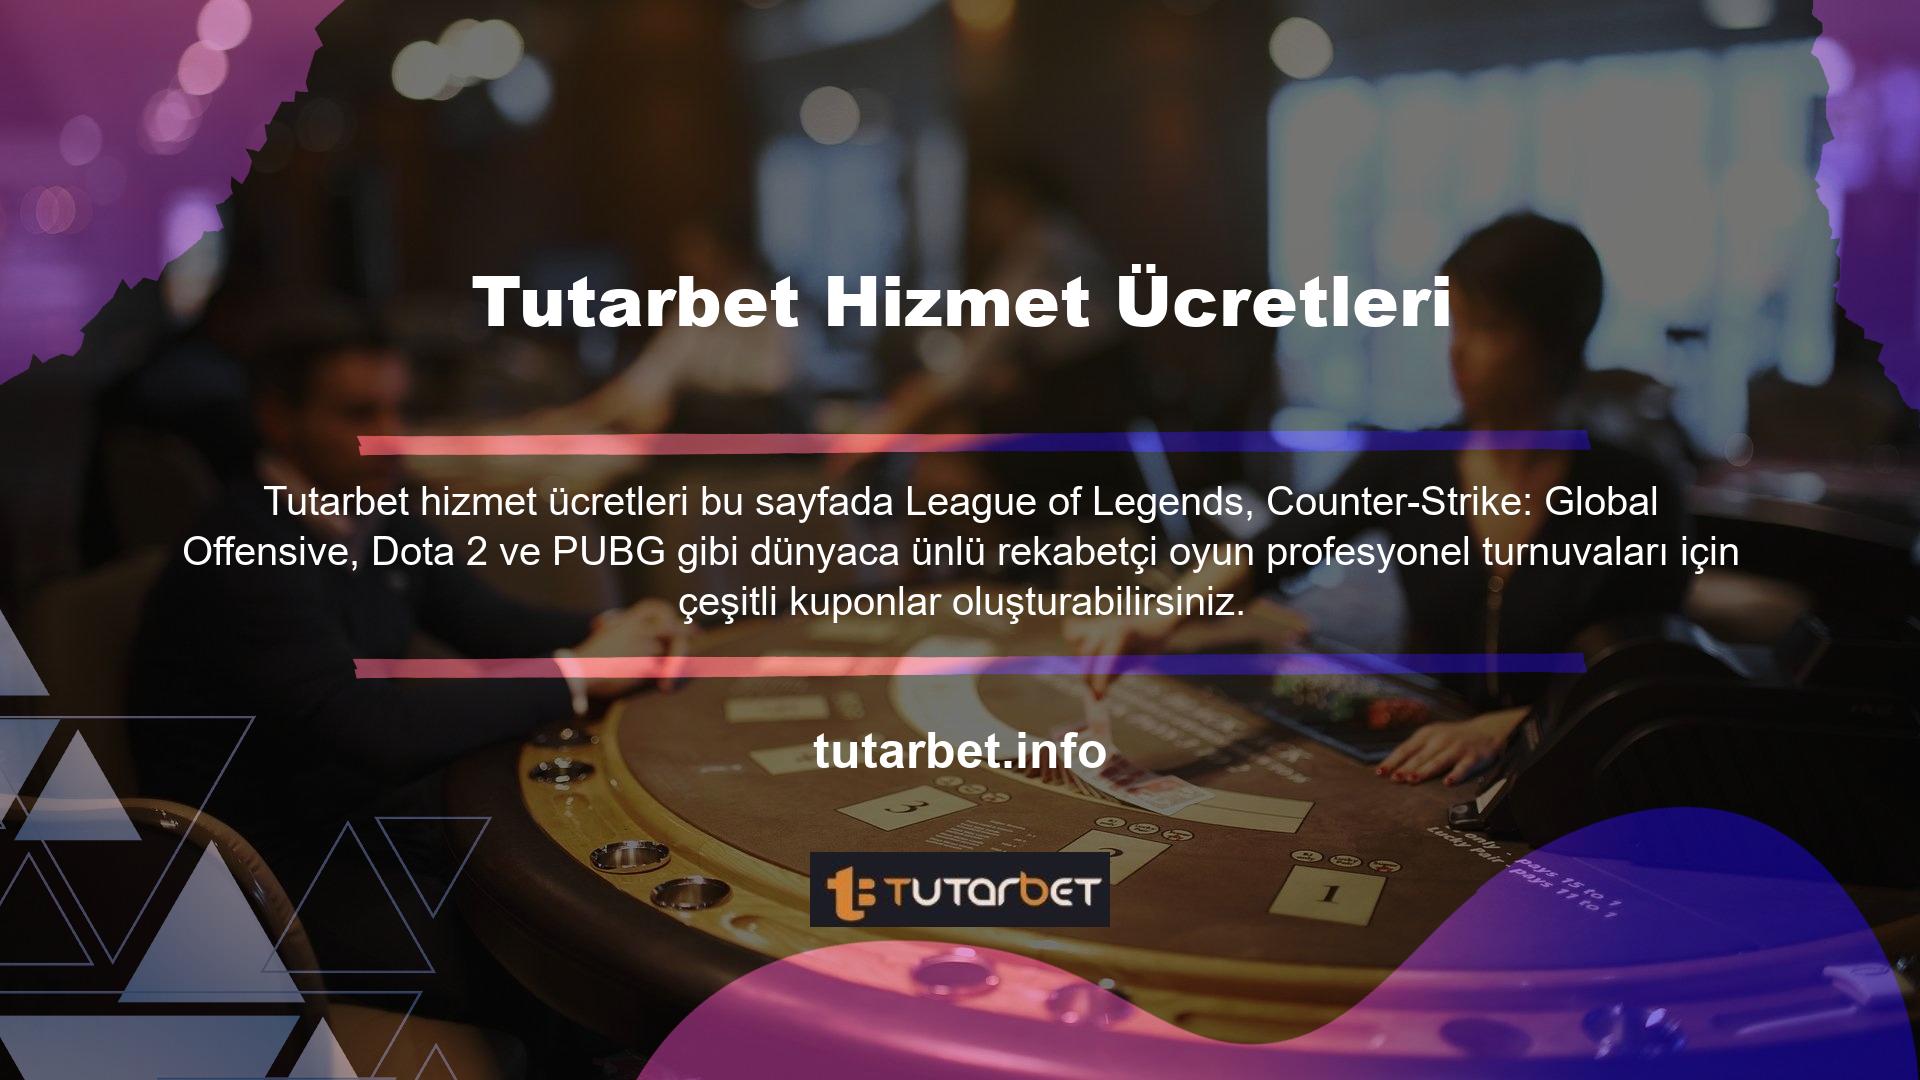 Online bahis ve casino sitesi Tutarbet, son yıllarda oldukça popüler hale gelen espor müsabakalarını sistemine entegre etti